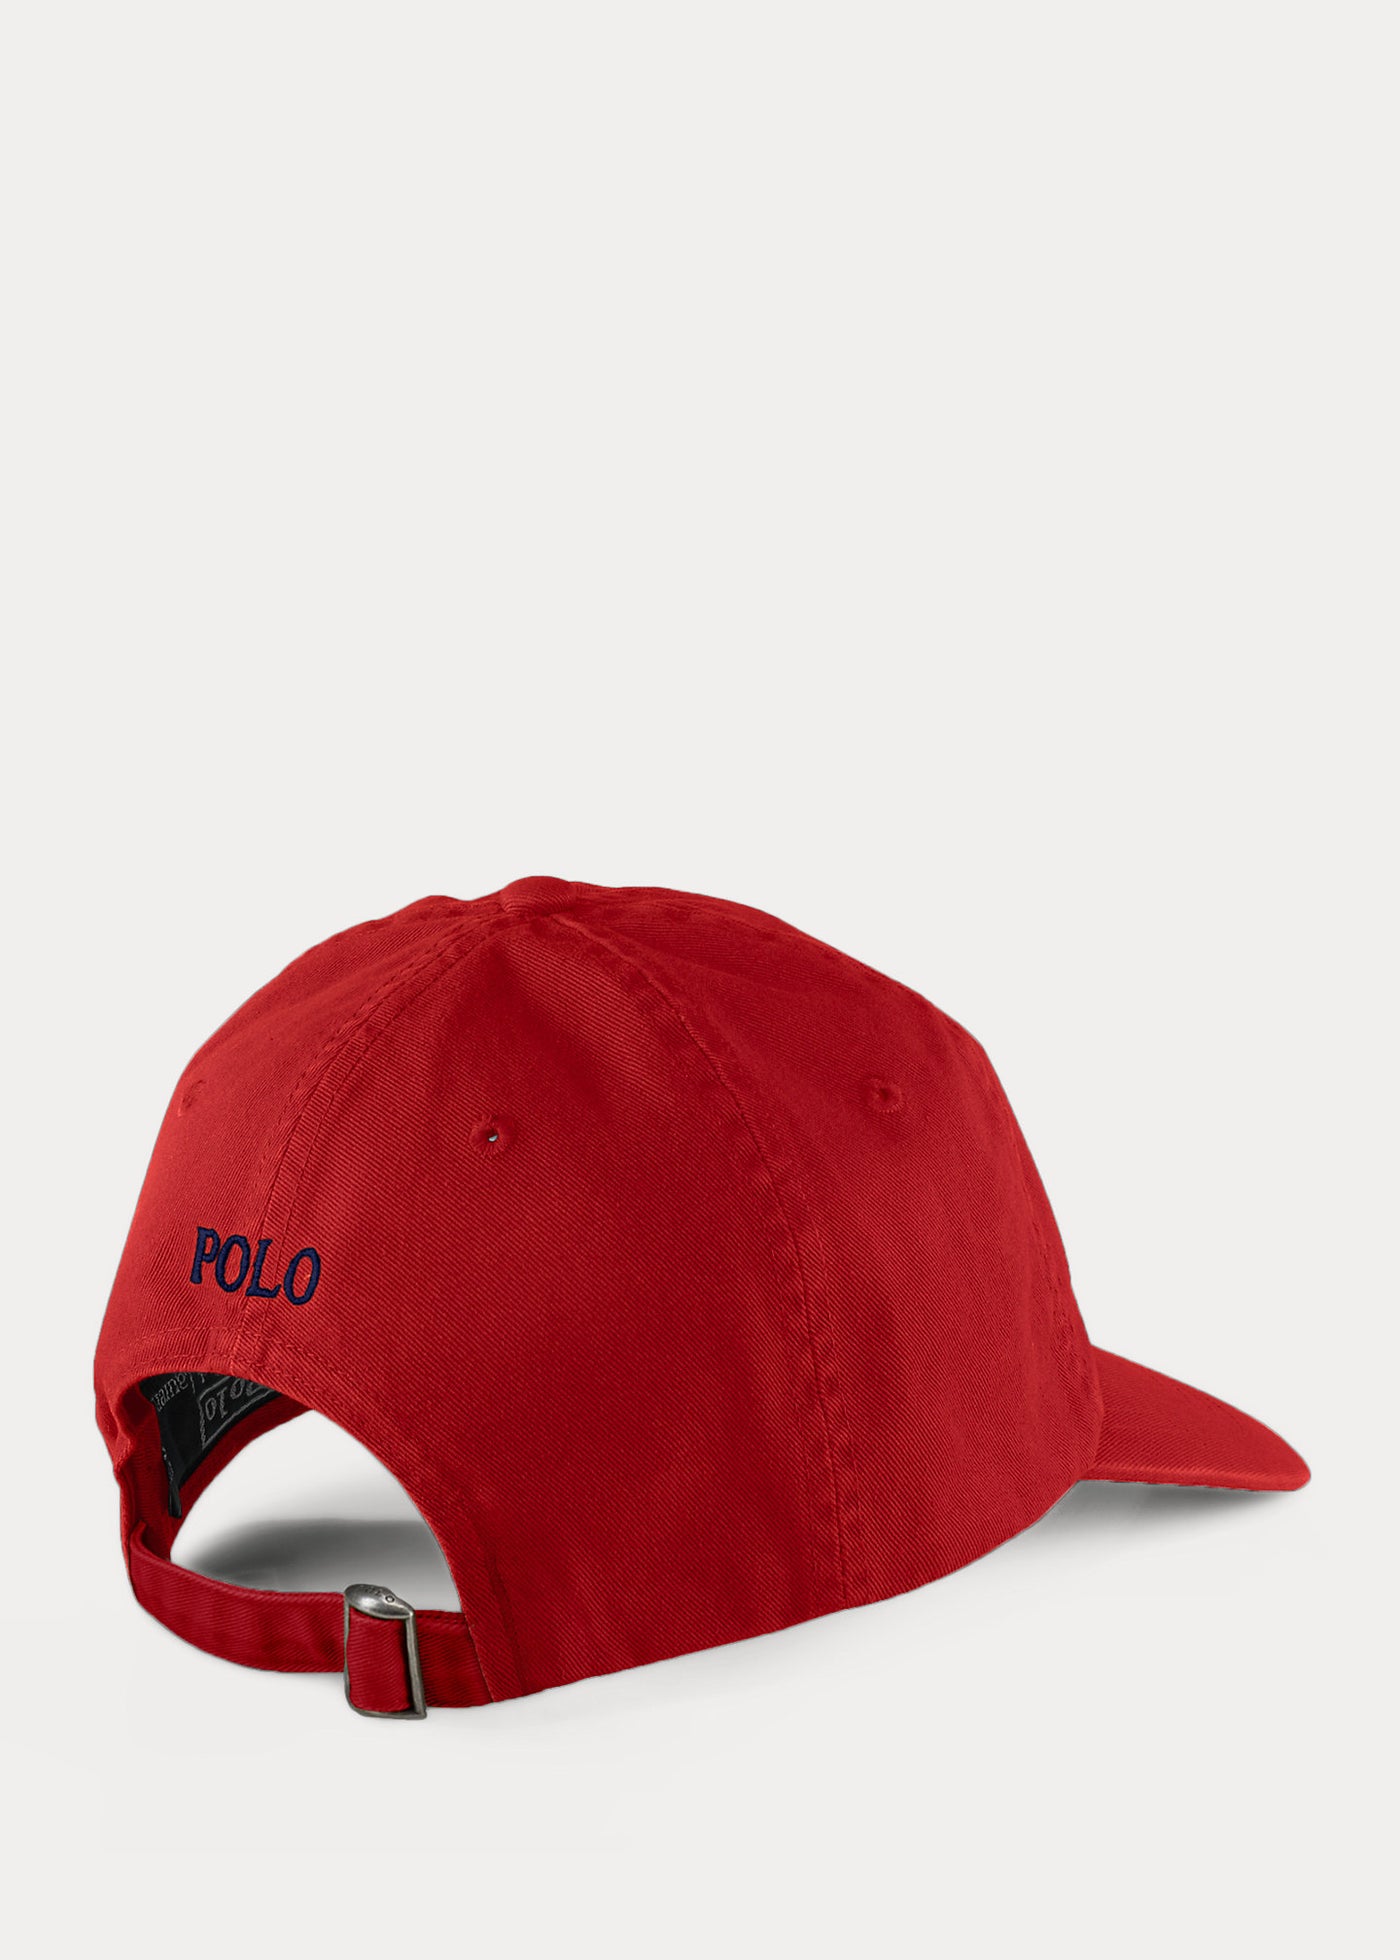 Ralph Lauren Cotton Chino Baseball Cap | Red